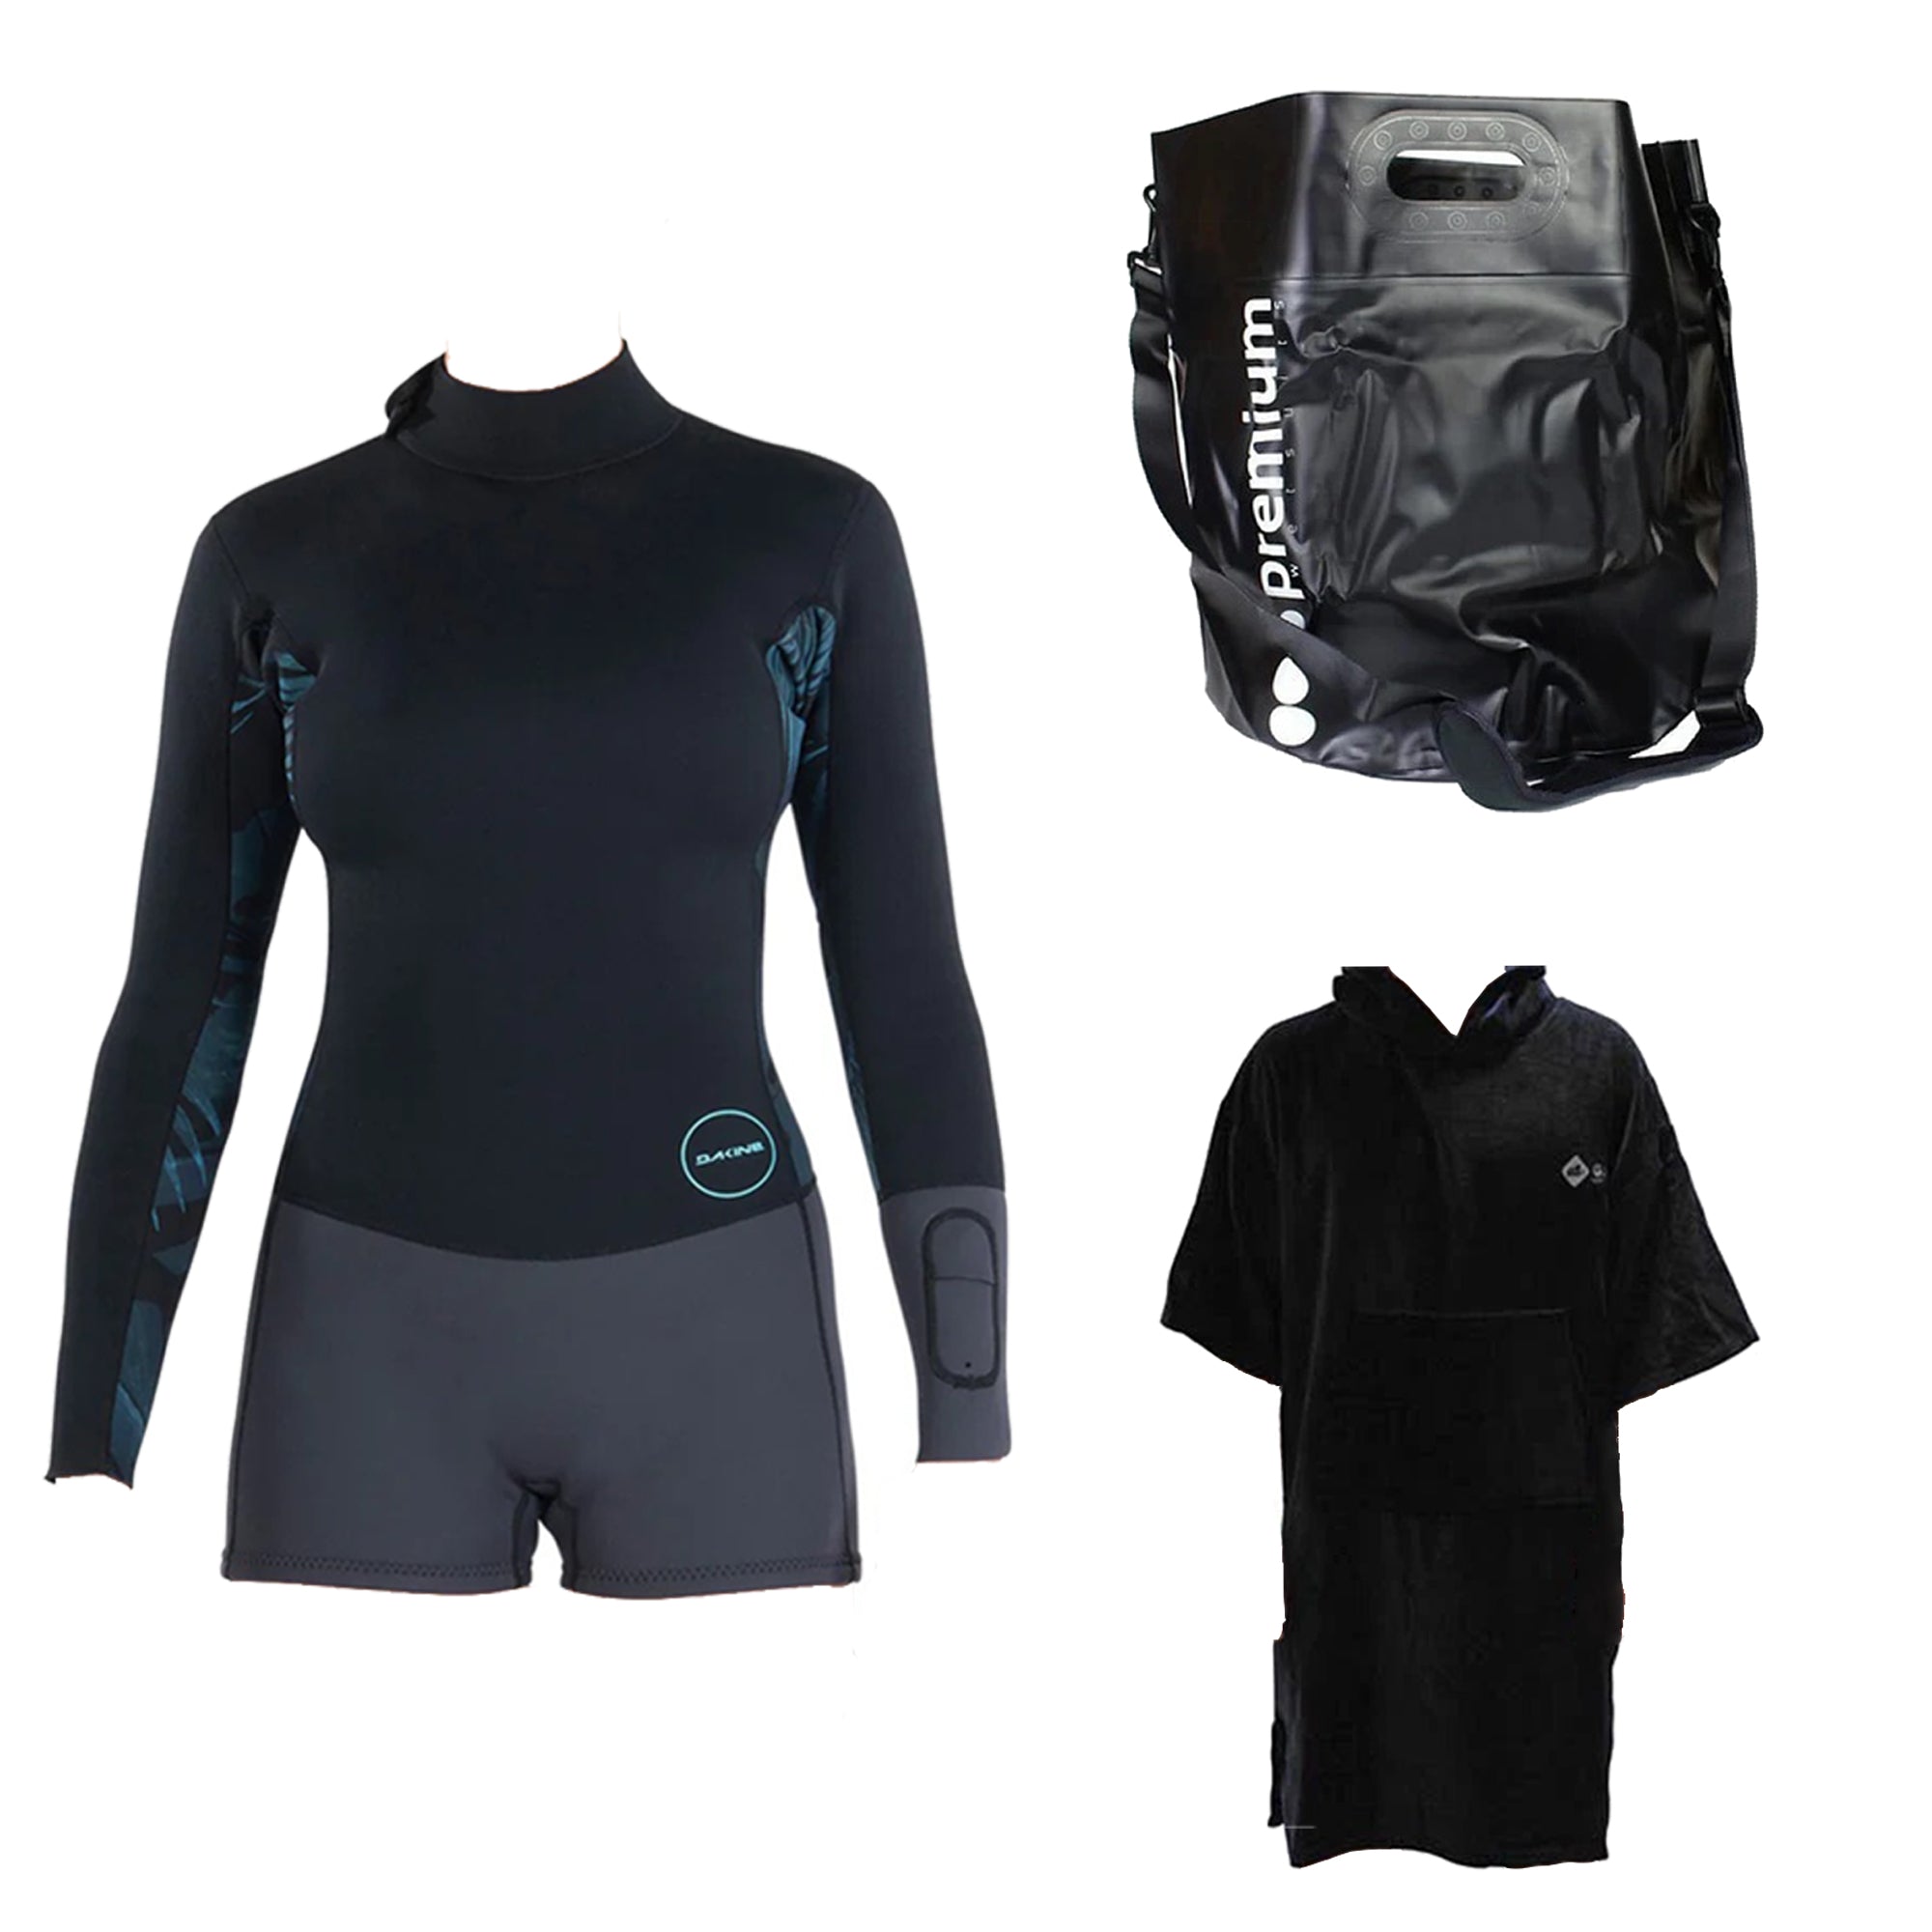 Sea Swimmer Kit - Springsuit, Bucket Bag & Robe